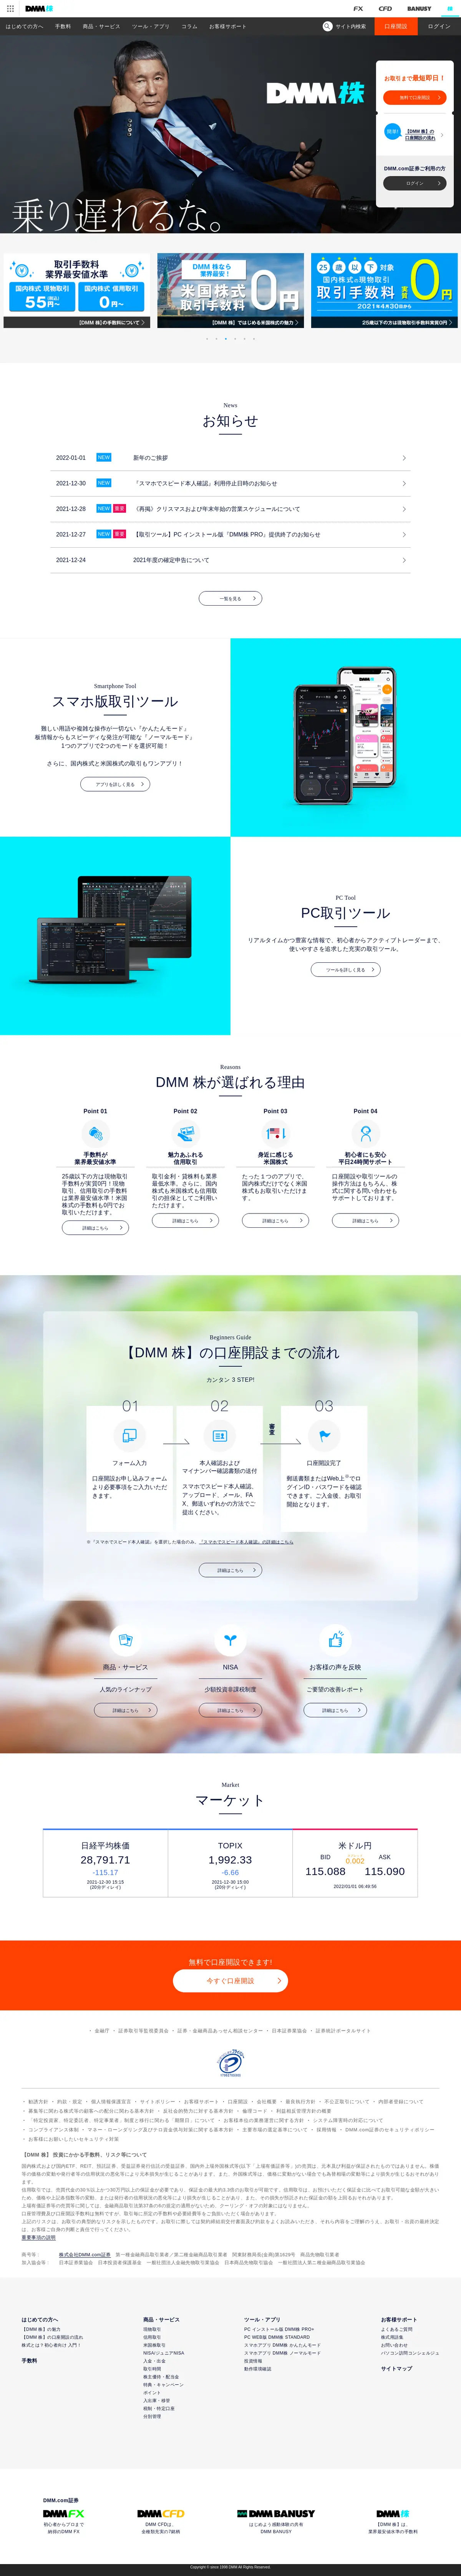 キャプチャ画面 会社名:DMM.com Groupプロジェクト名:DMM 株 画面名:全国トップ デバイス名:PCカテゴリ:金融・保険タグ:PC,全国トップ